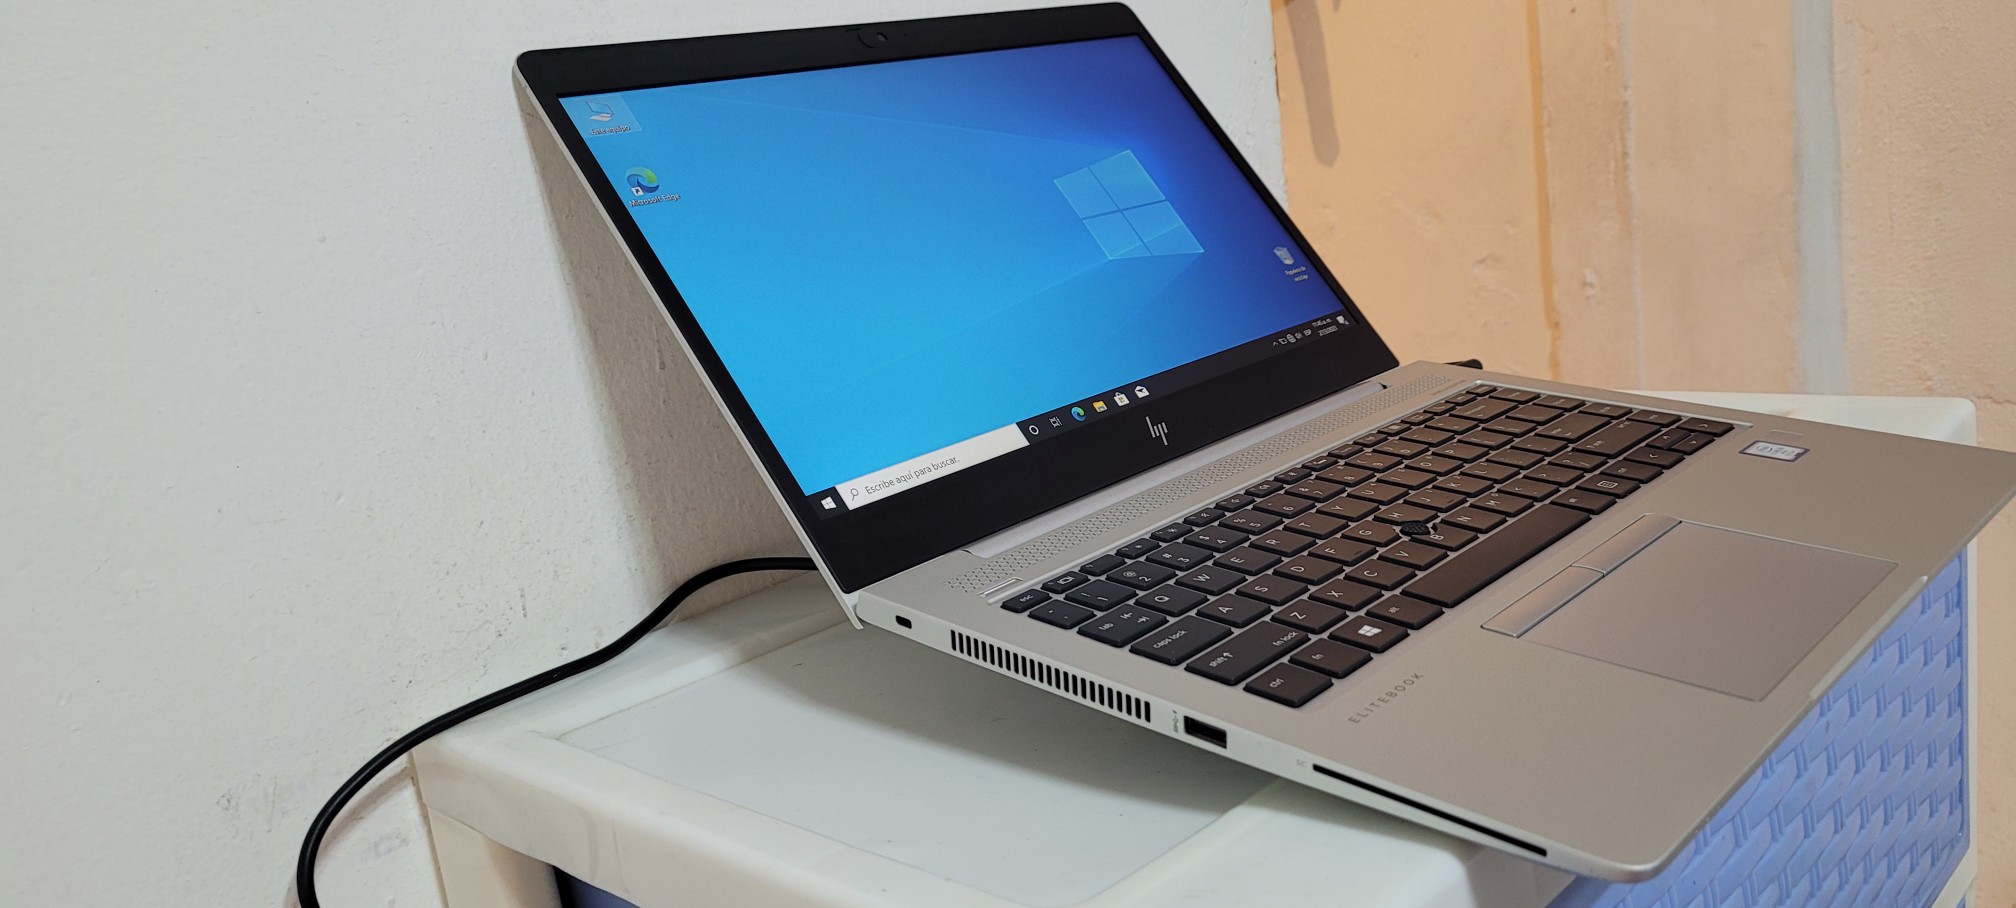 computadoras y laptops - Laptop hp Slim G3 14 Pulg Core i5 7ma Ram 8gb ddr4 Disco 256gb SSD HDMI 1